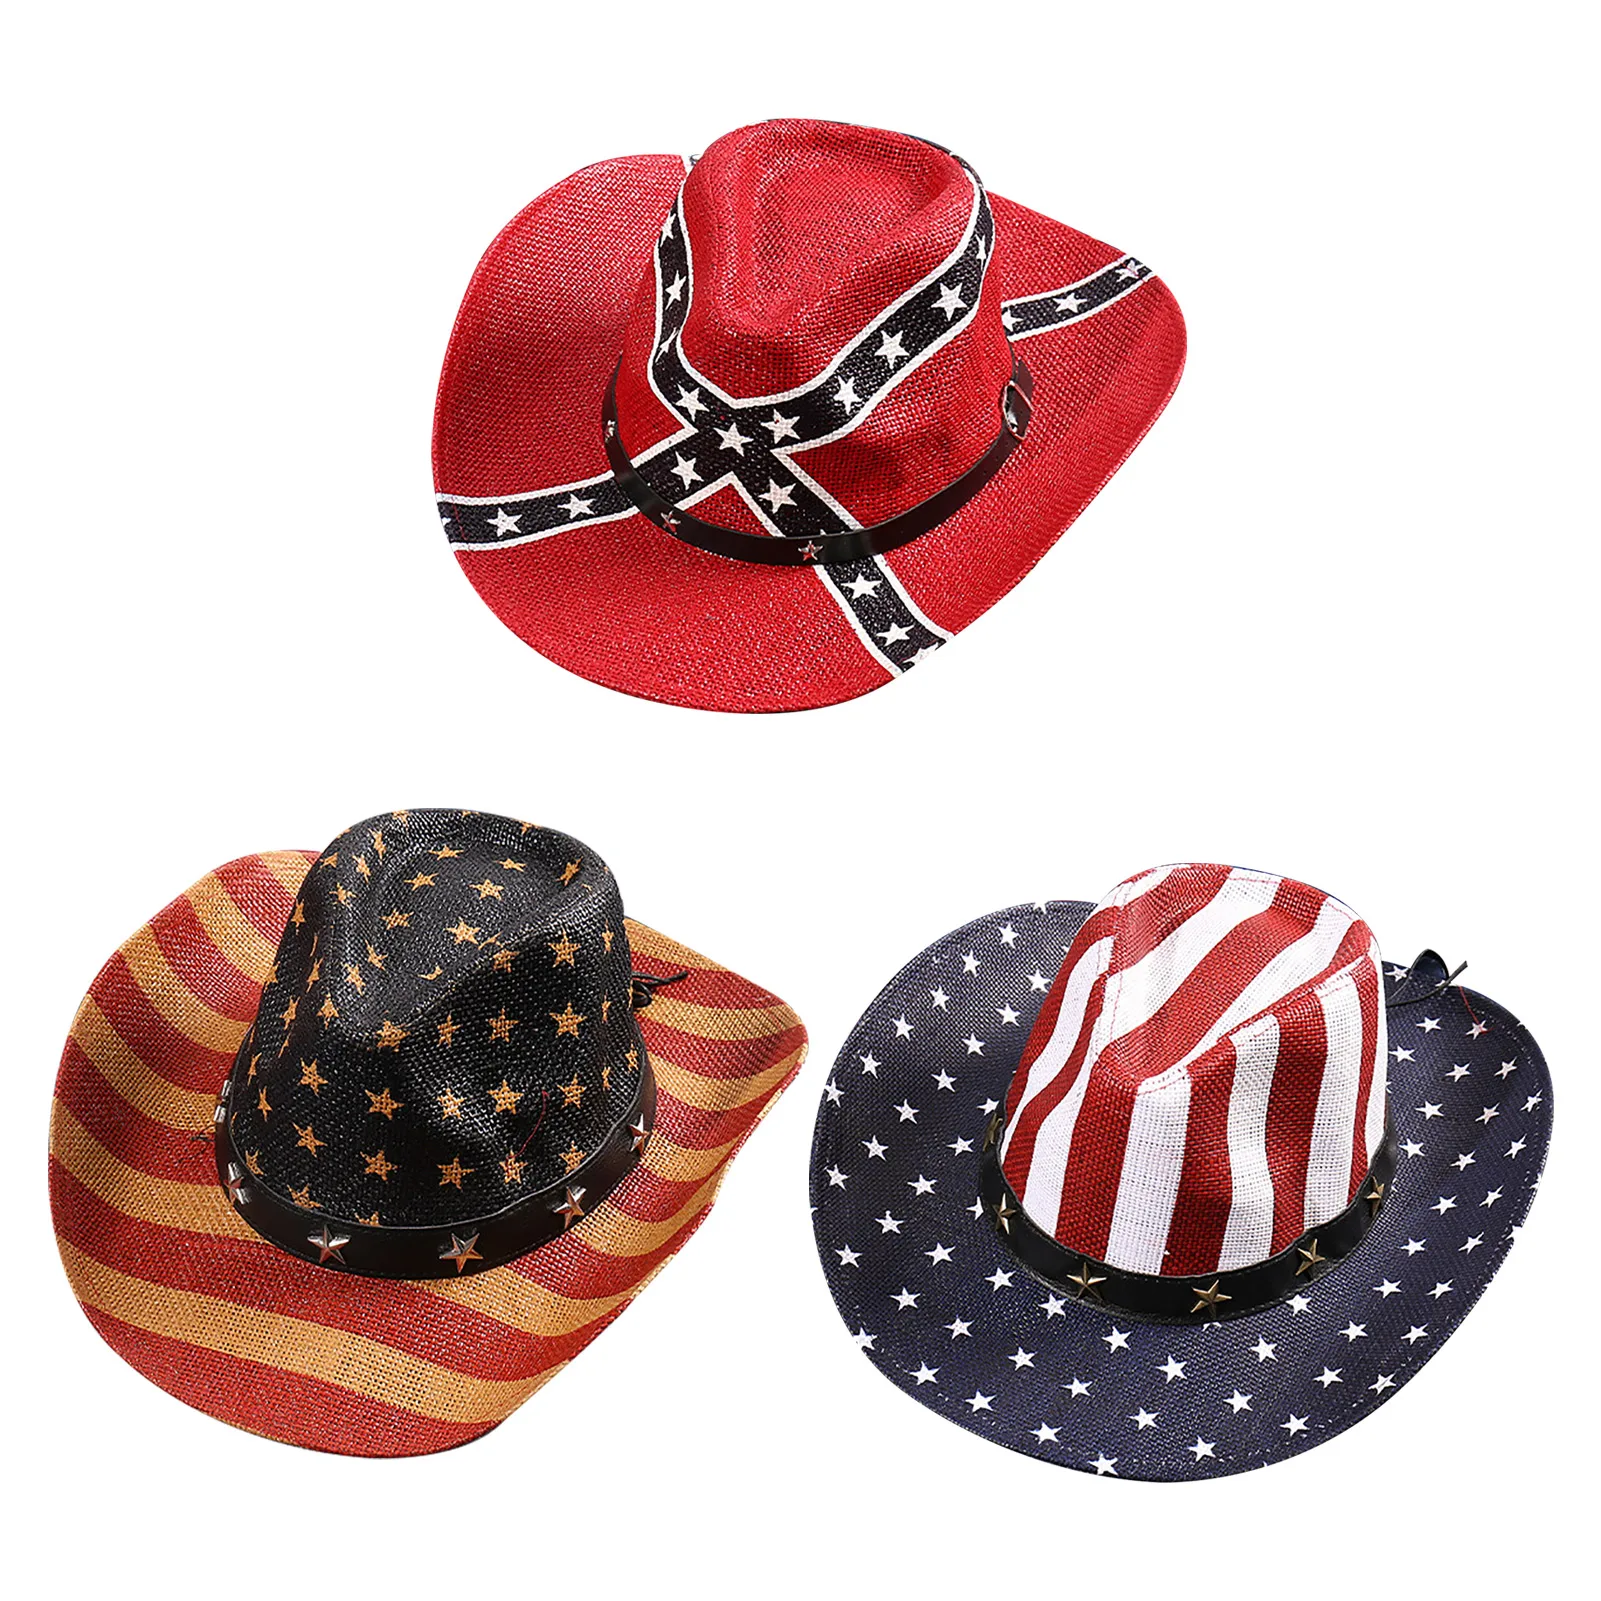 Sonnenhut Amerikanischen Flagge Shapeable Männer Cowboy Hüte Mit Sterne Und Streifen Patriotischen Unisex Erwachsene Größe Sparkly Cowboy Hut In rot